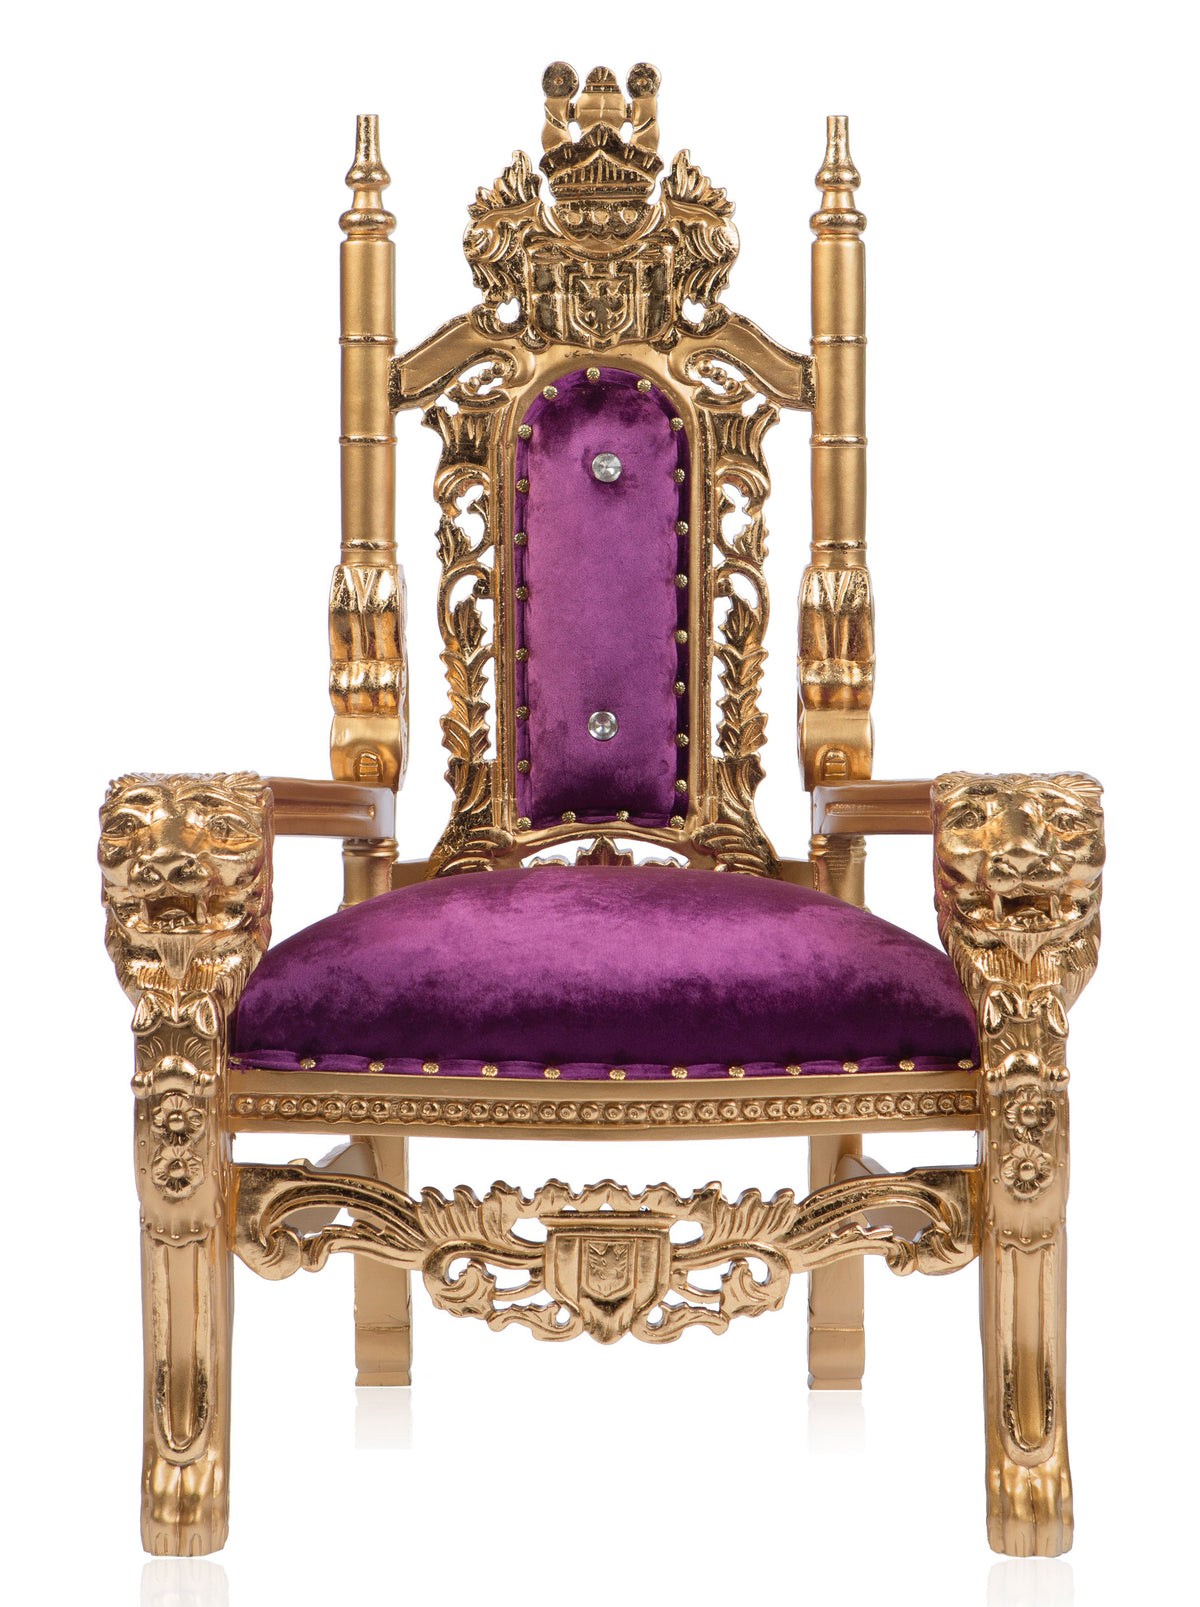 Gothic "Rapunzel" Kids Lion Head Throne Purple/Gold (West Coast)